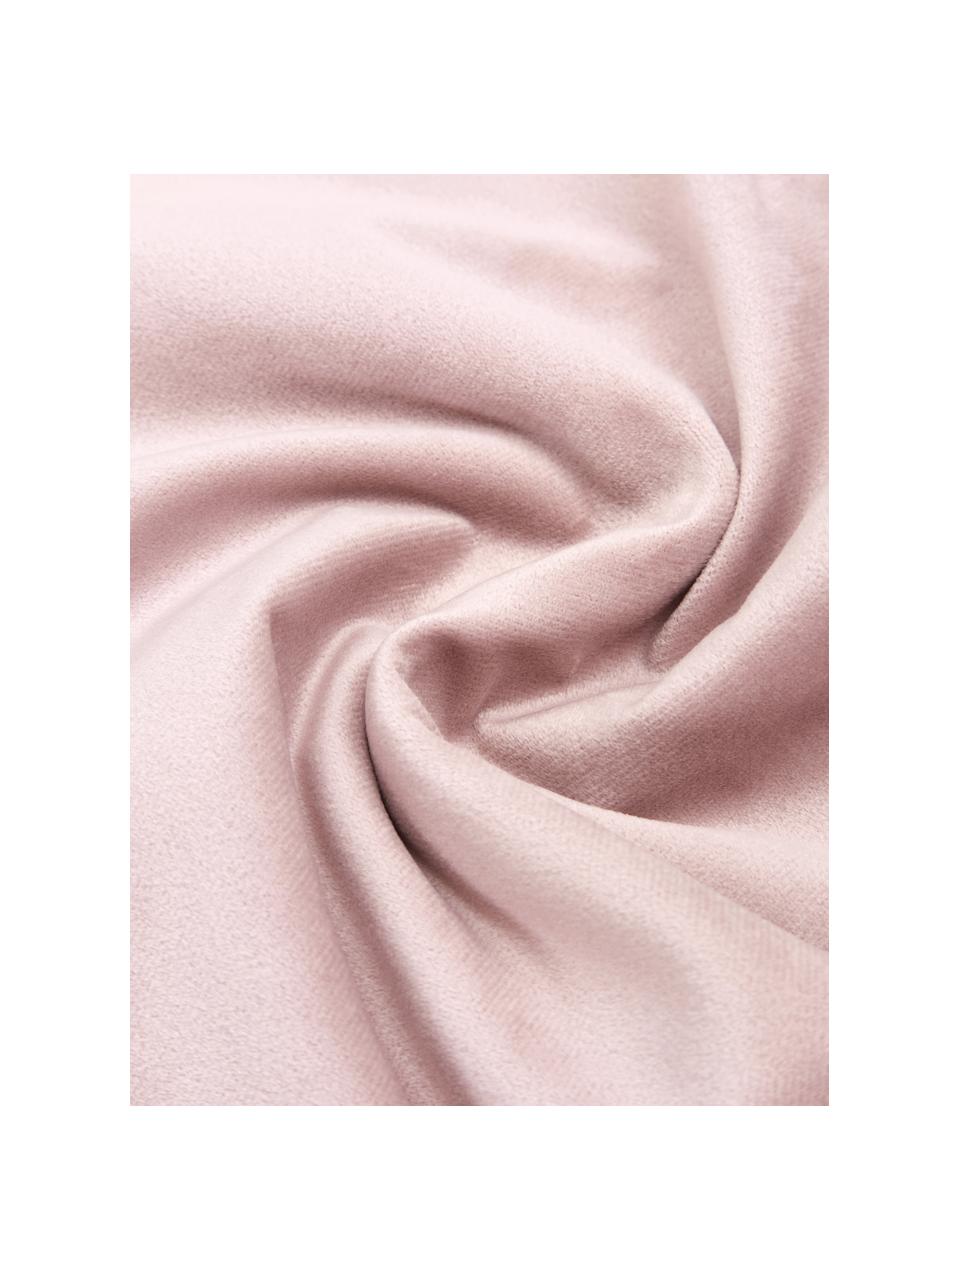 Housse de coussin rectangulaire en velours rose Lucie, 100 % velours de polyester, Rose, larg. 30 x long. 50 cm